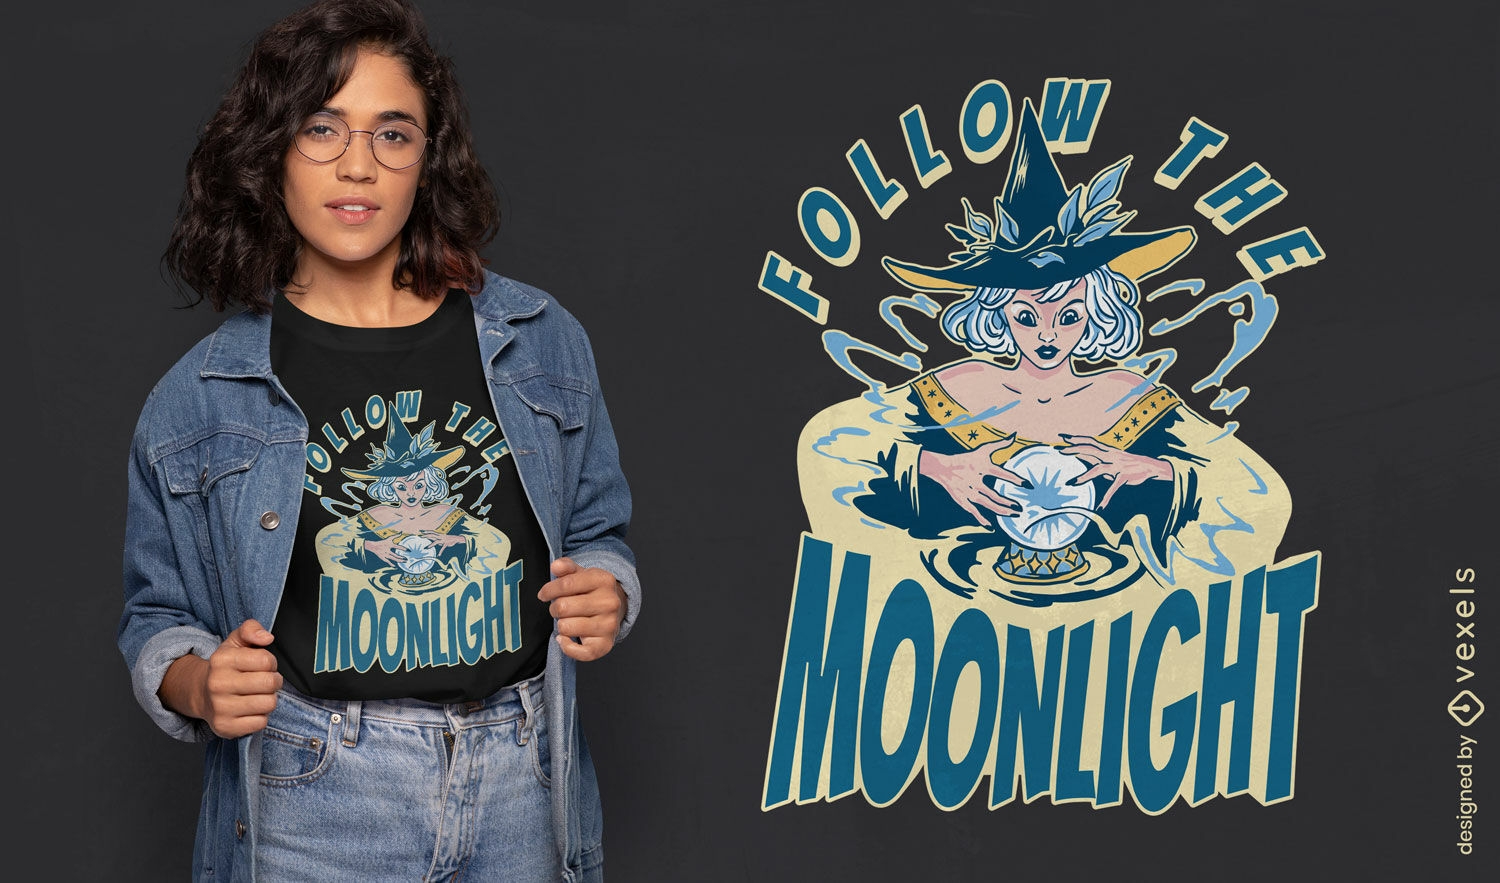 Follow the moonlight modern witch t-shirt design